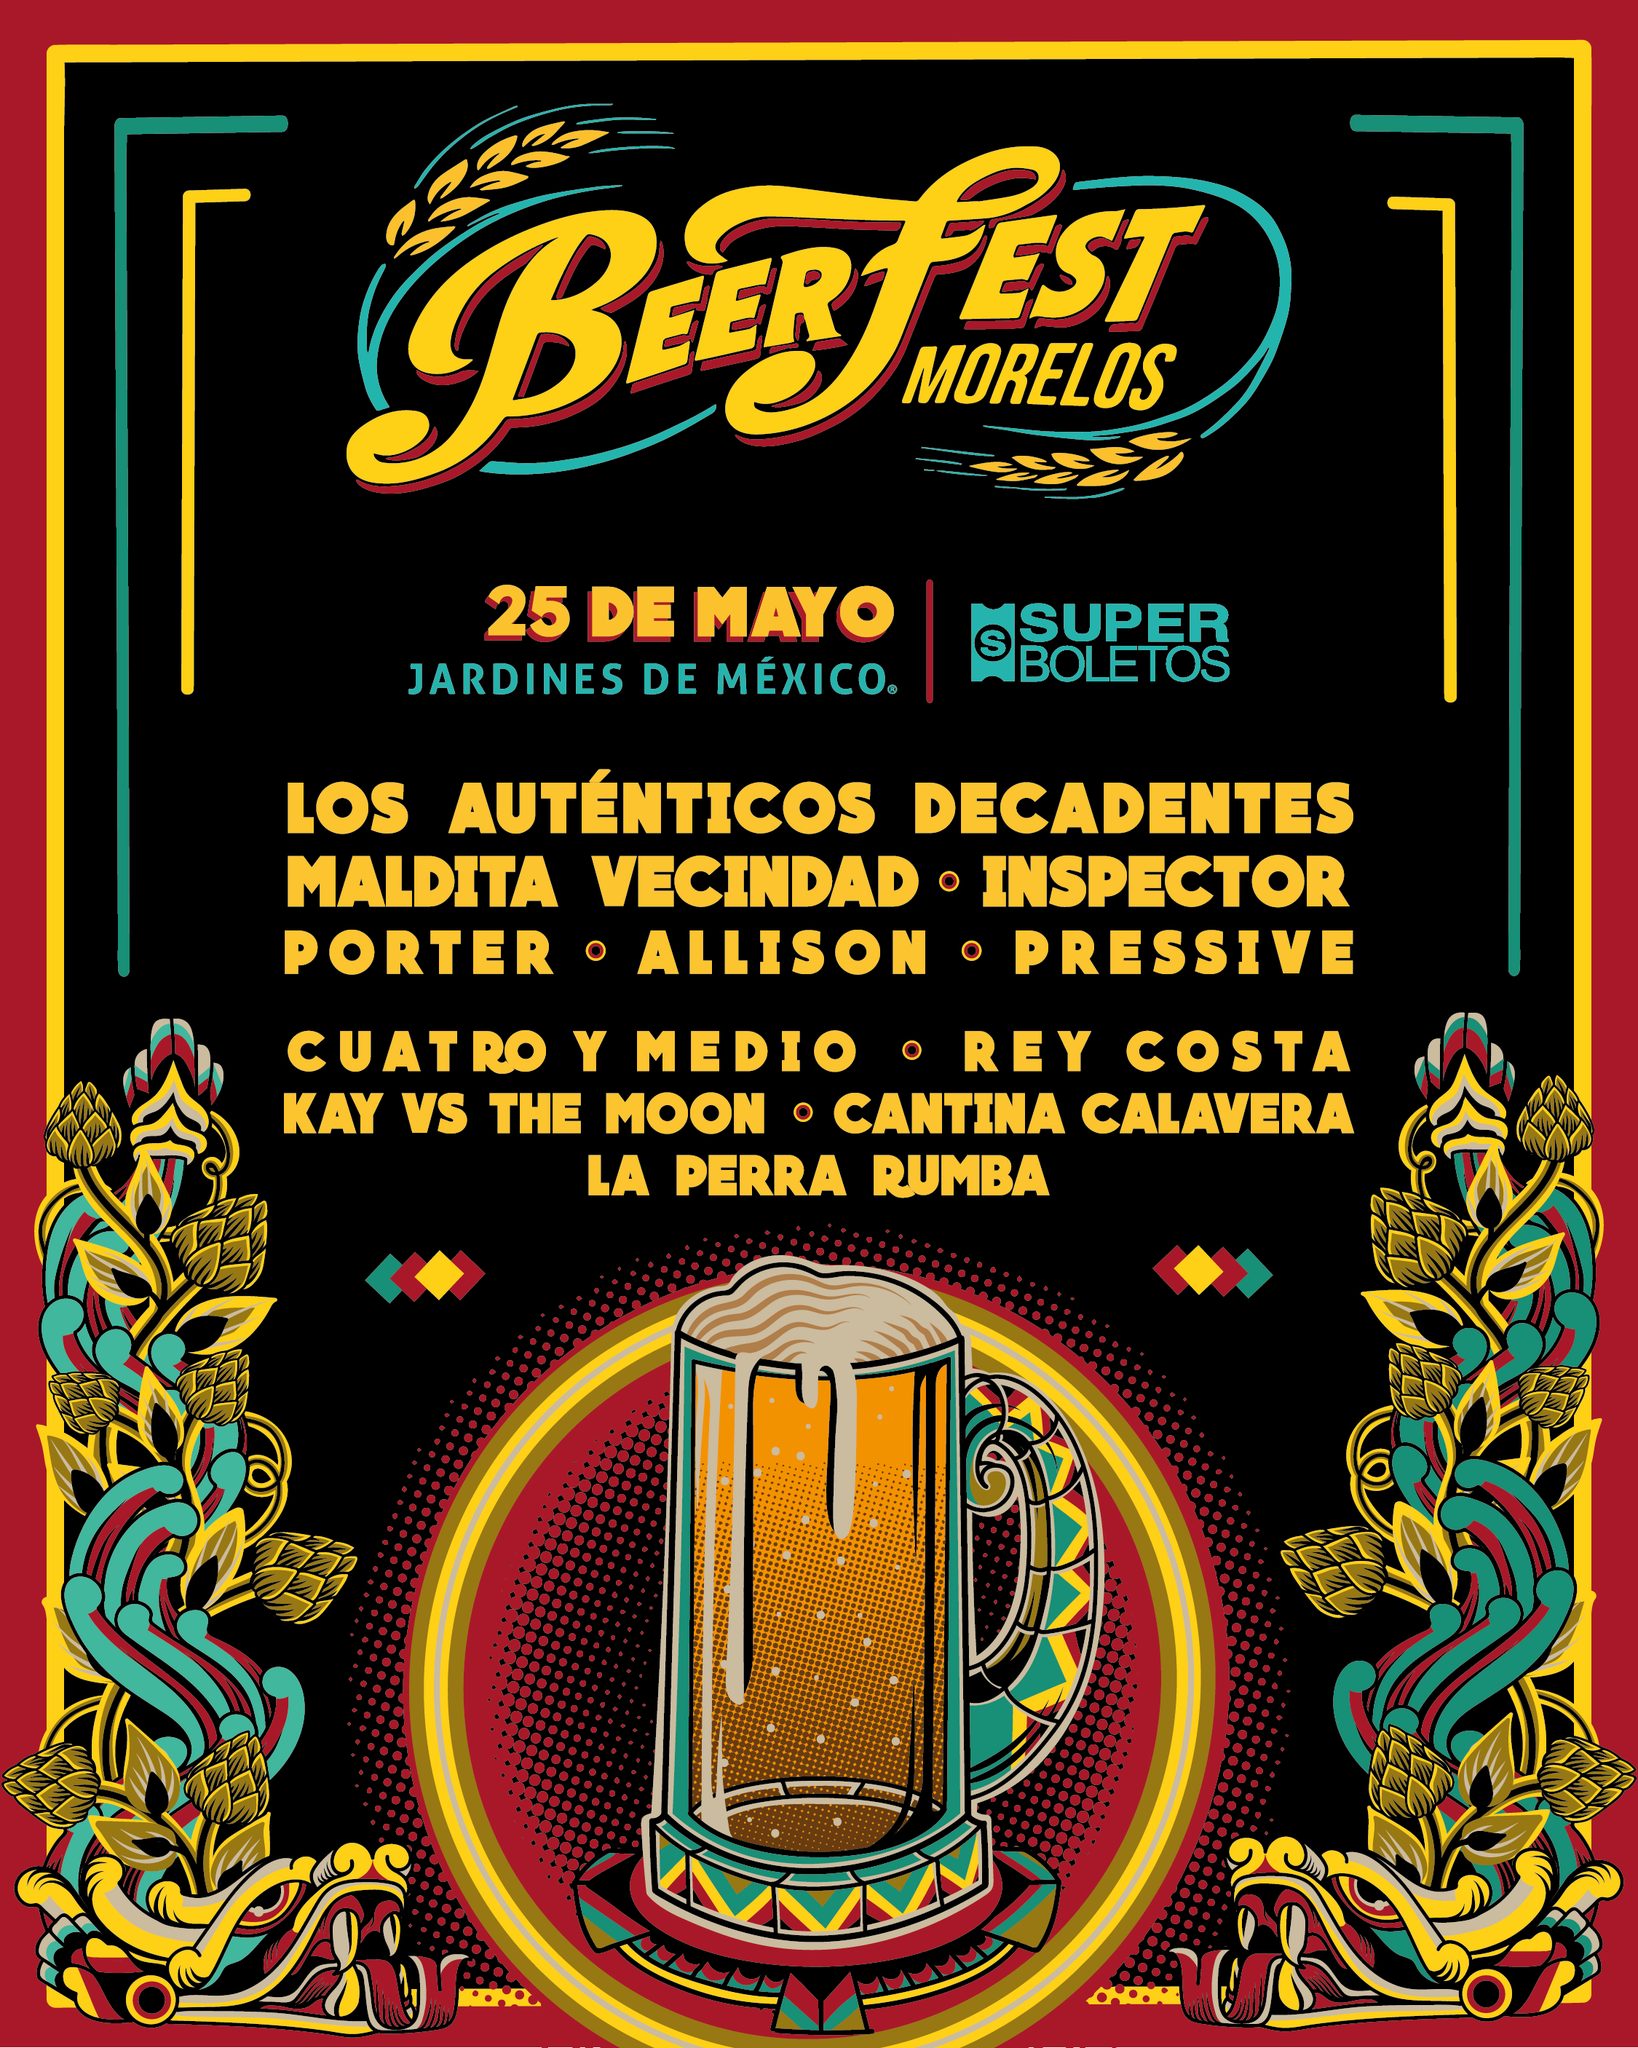 Beerfest Morelos 1 